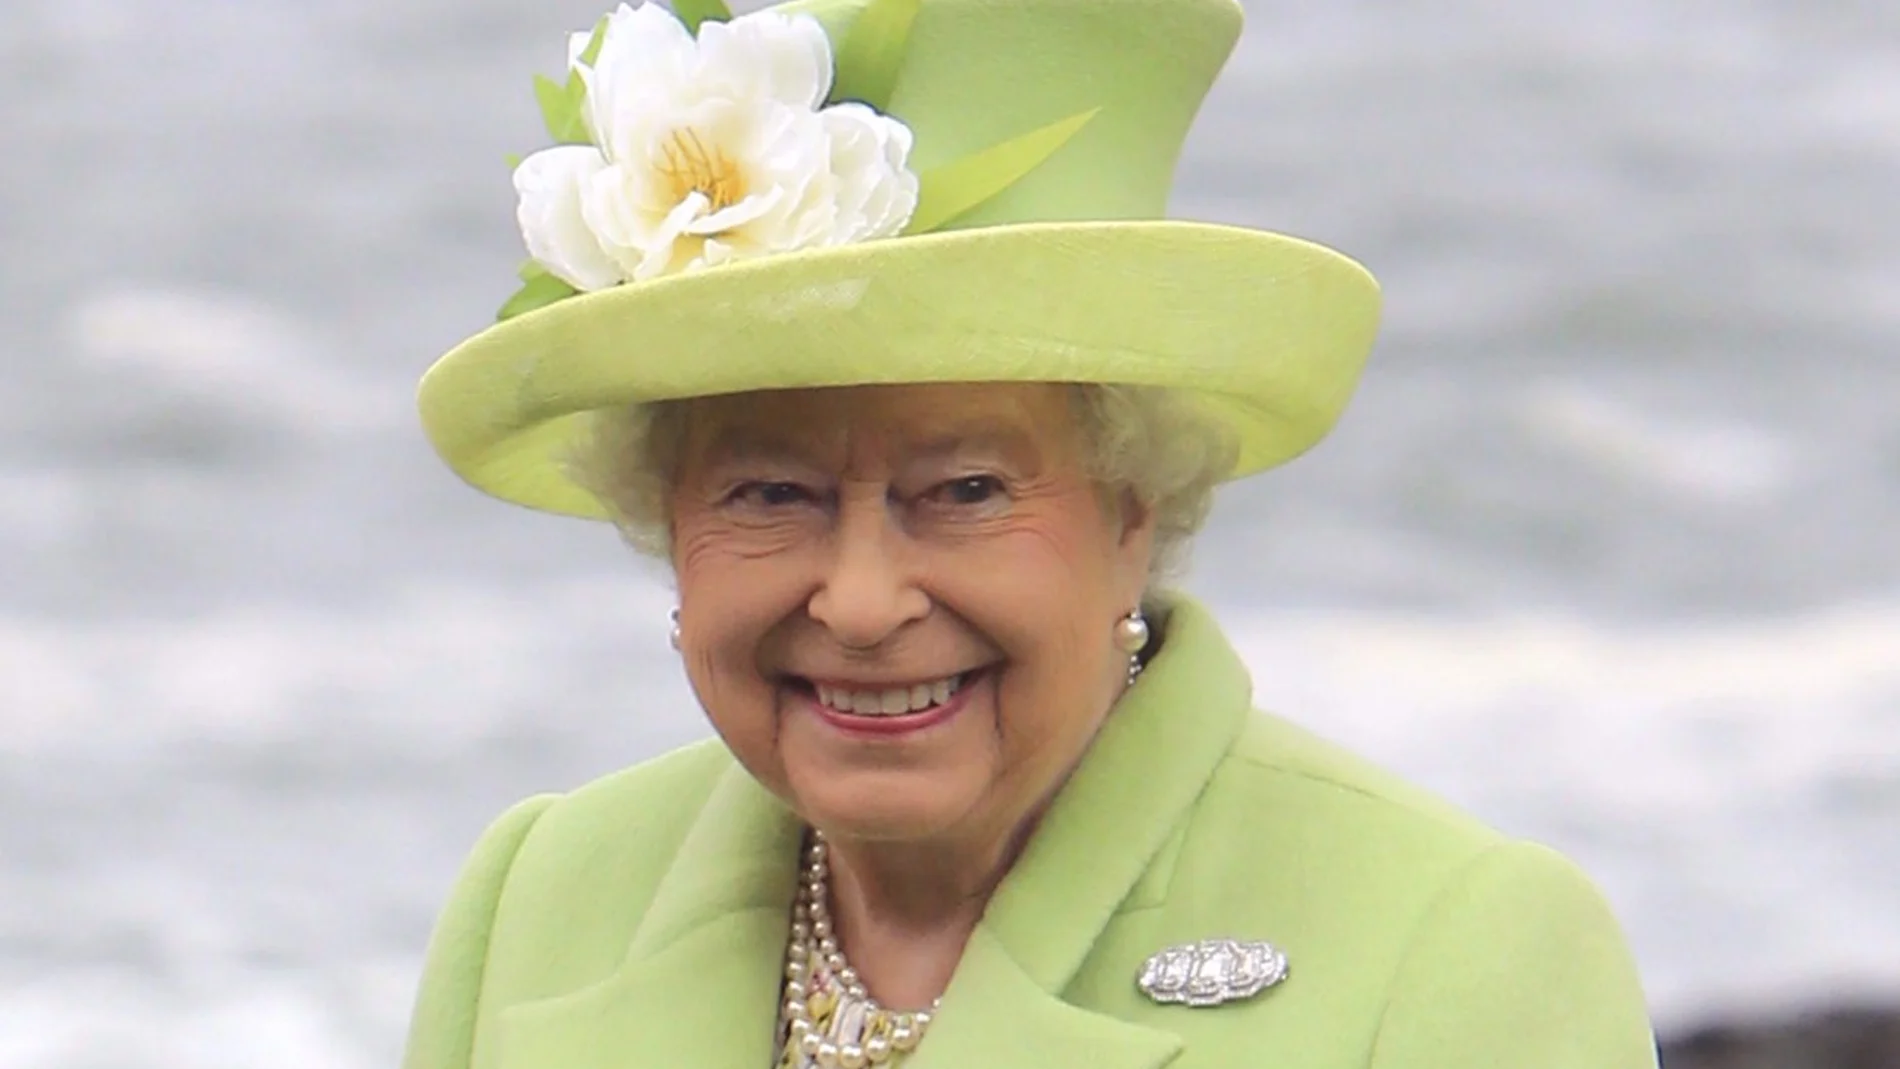 Isabel II, monarca de Reino Unido